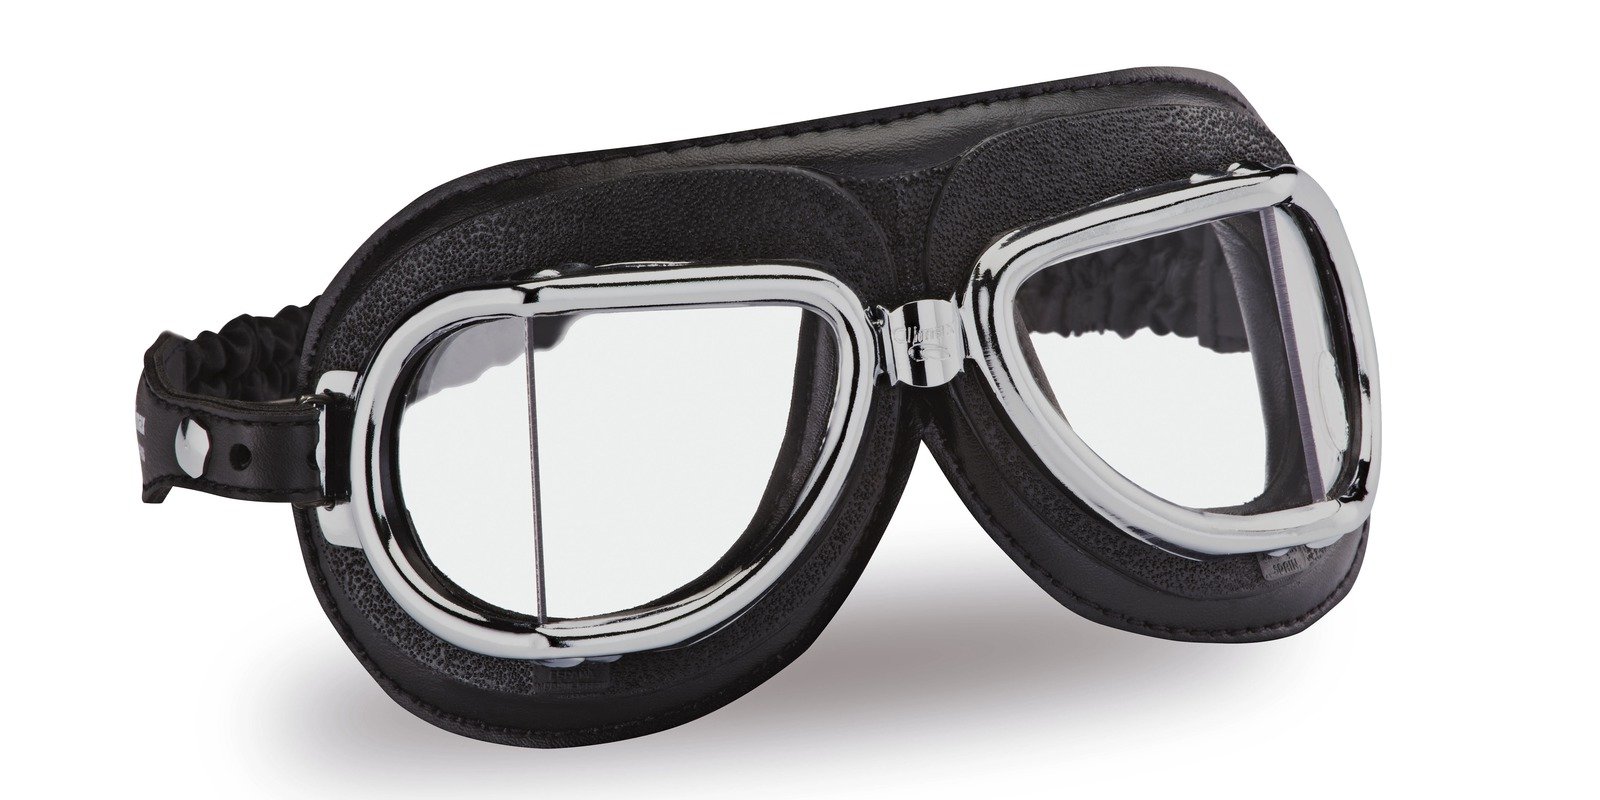 Obrázek produktu Vintage brýle 513, CLIMAX (černé/chromový rámeček/skla čirá) 1301513115000